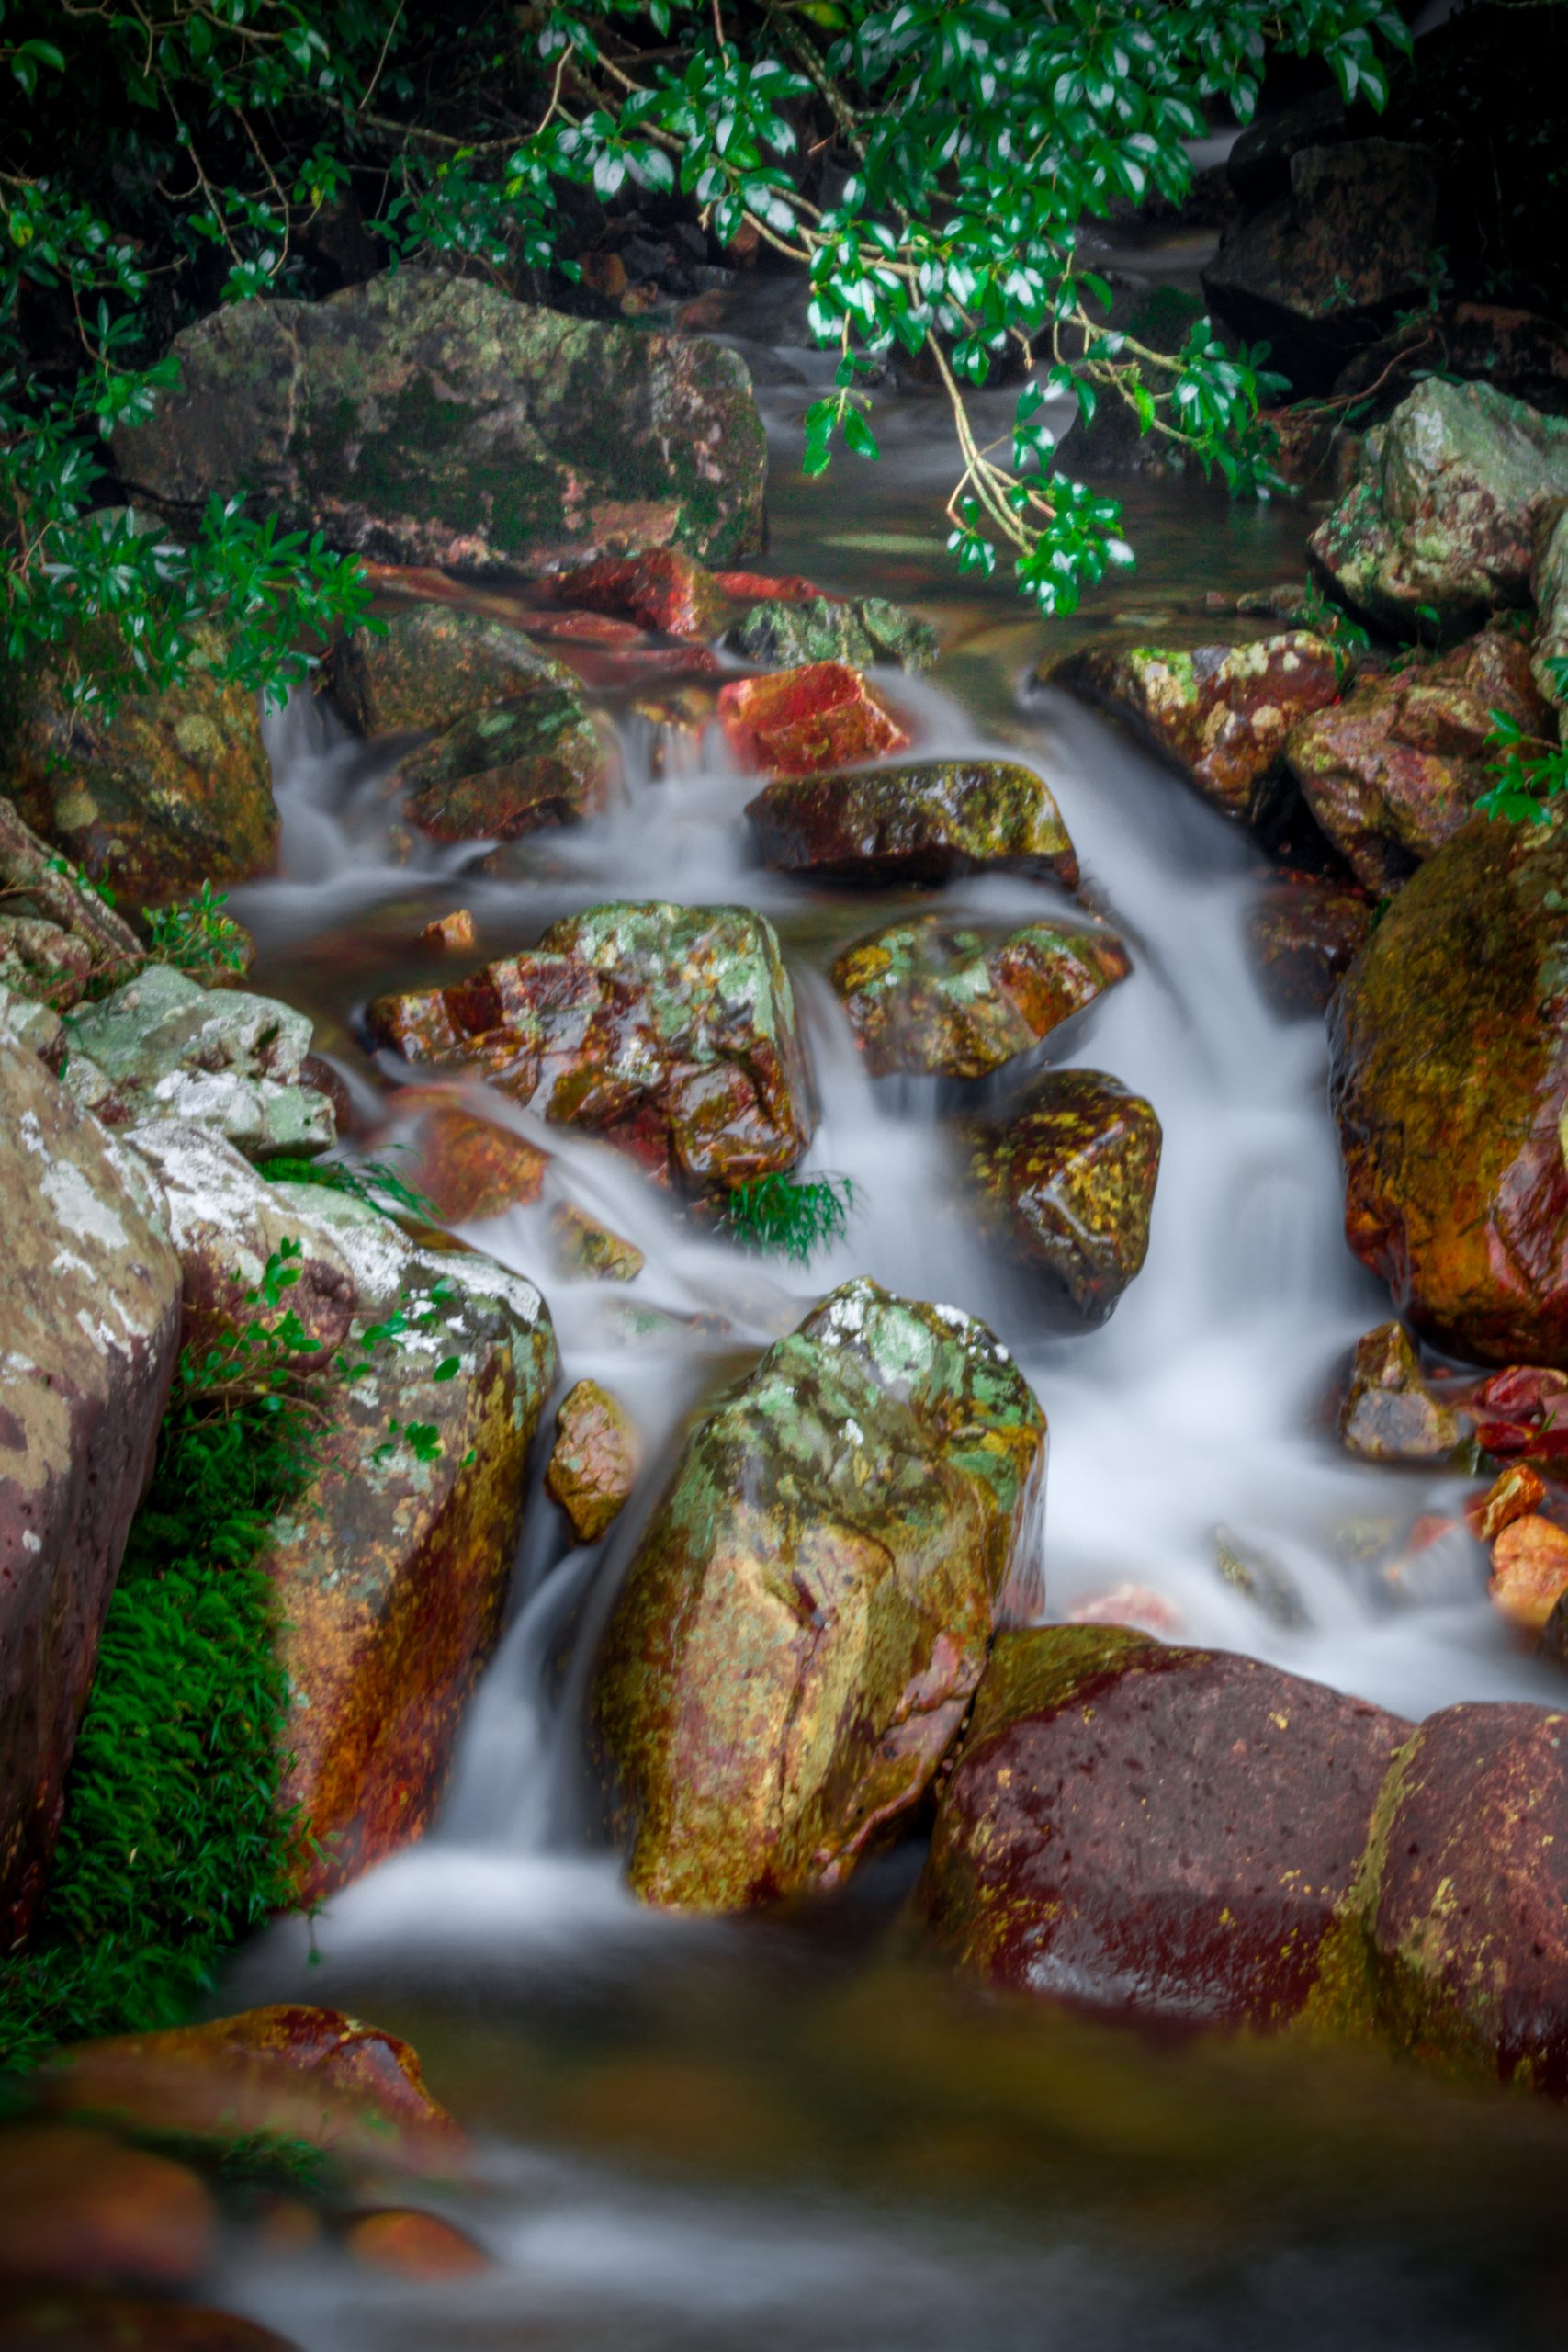 water flowing through rocks